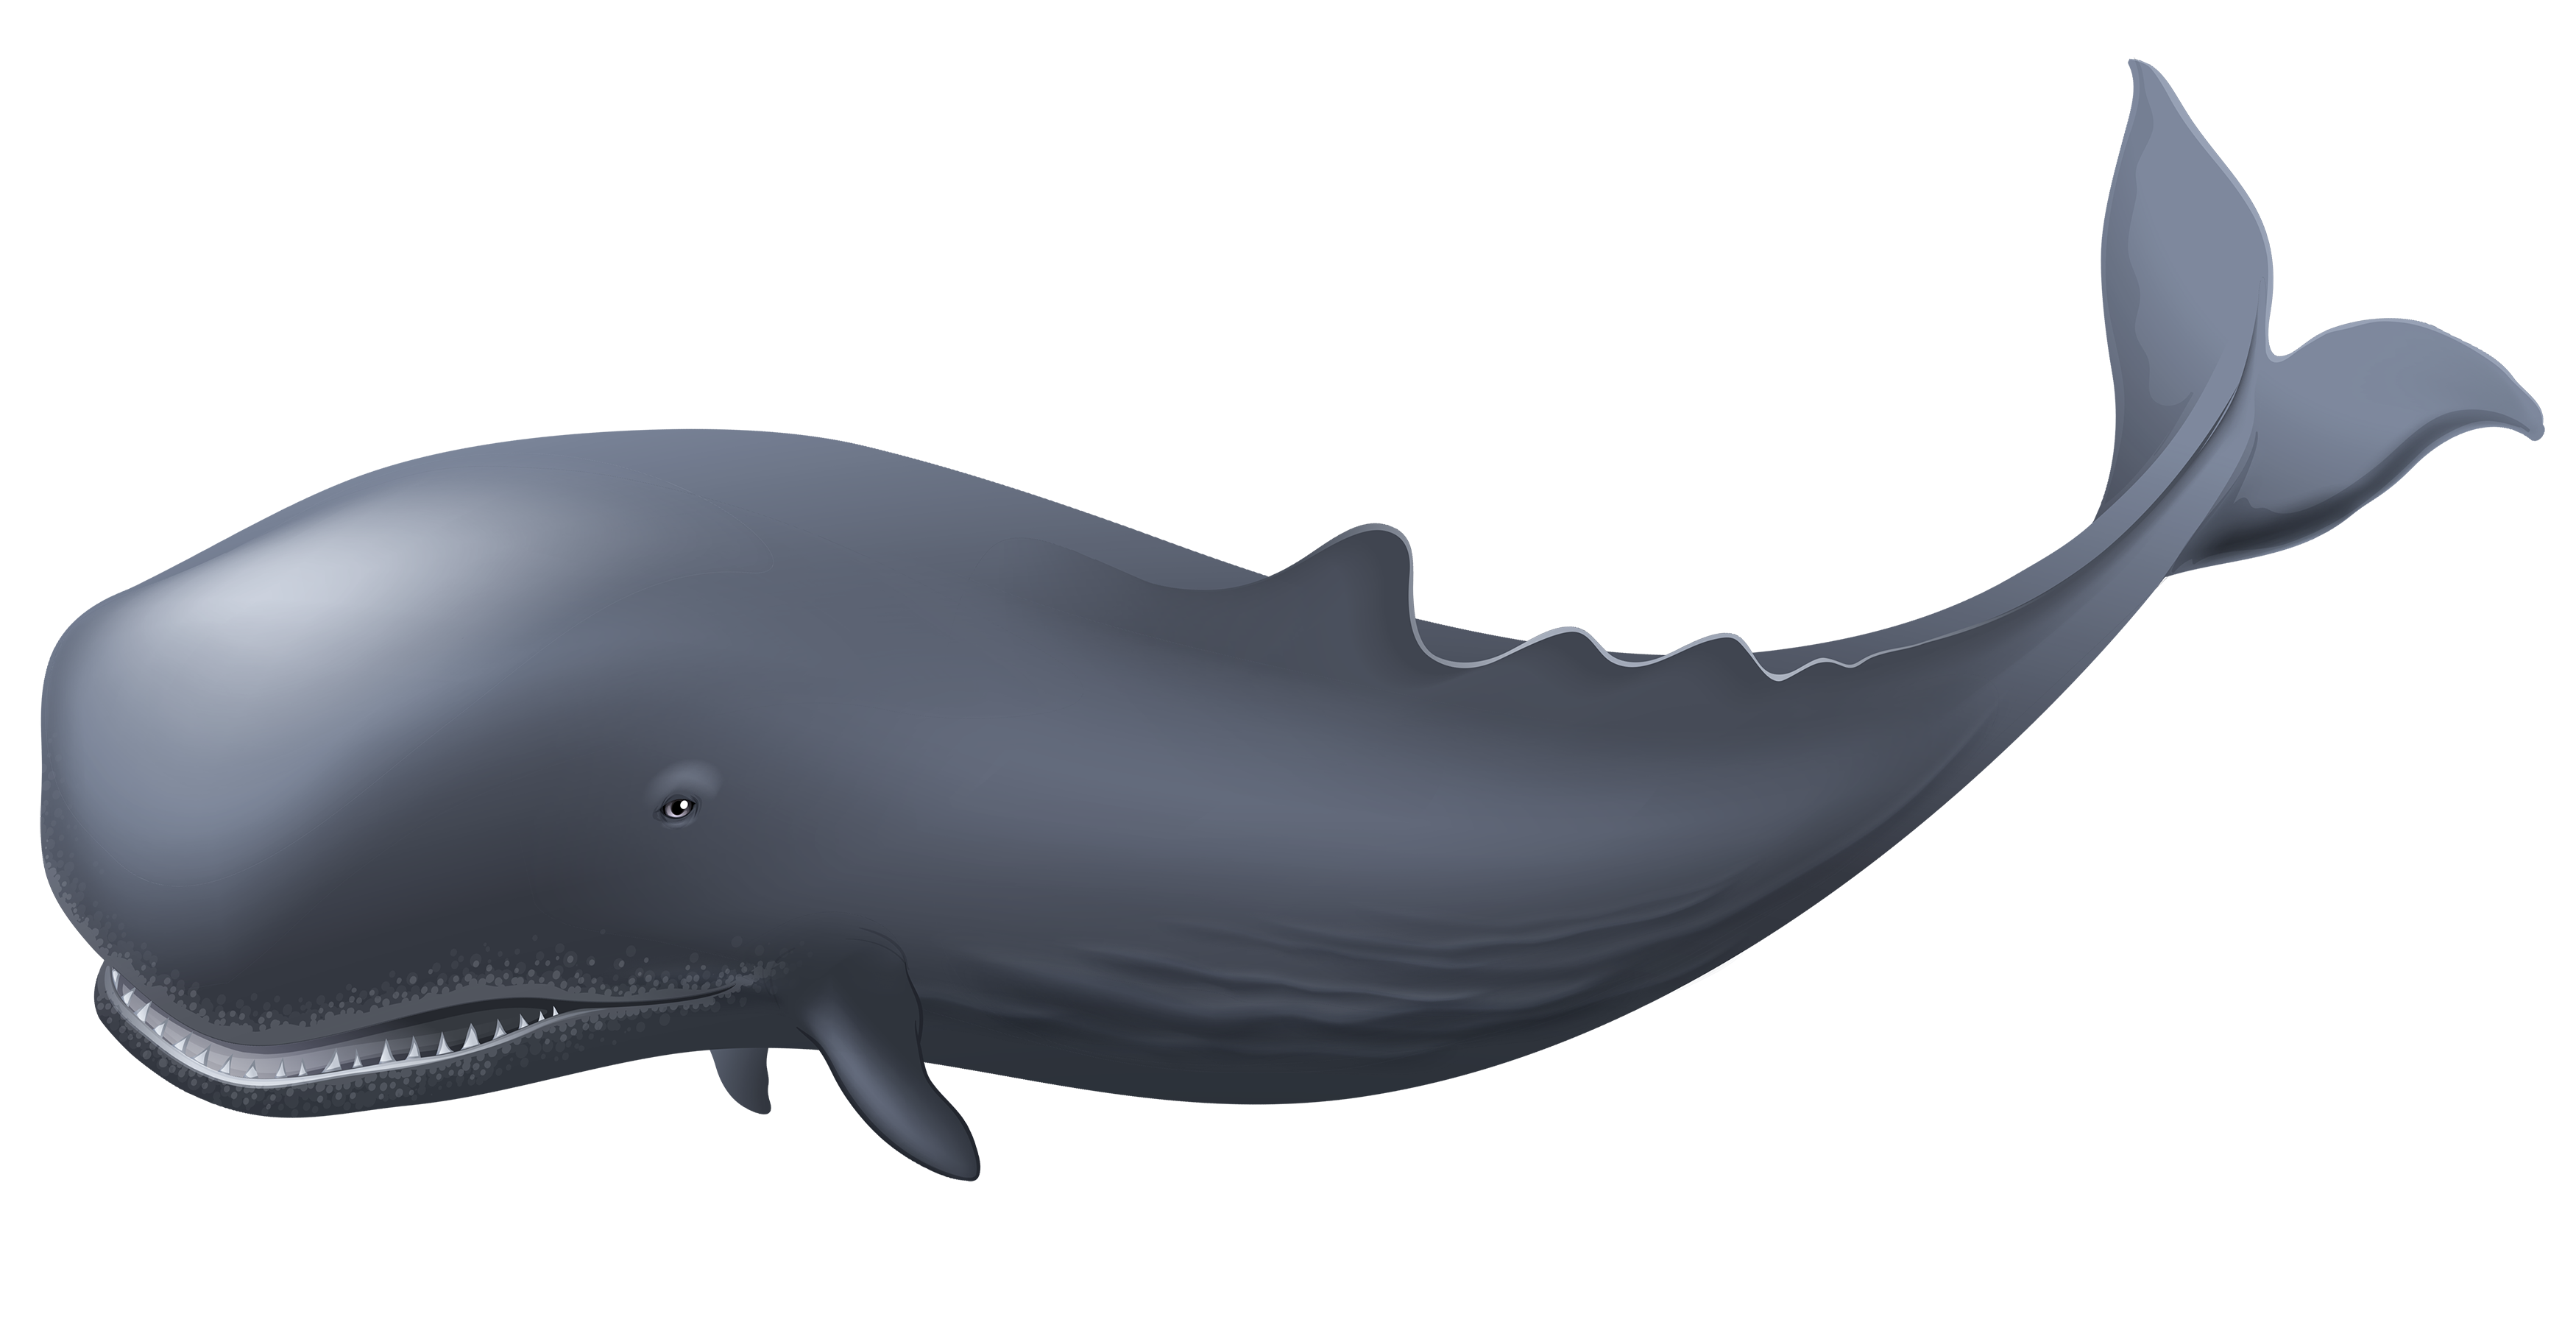 Blue Whale Transparent Backgr